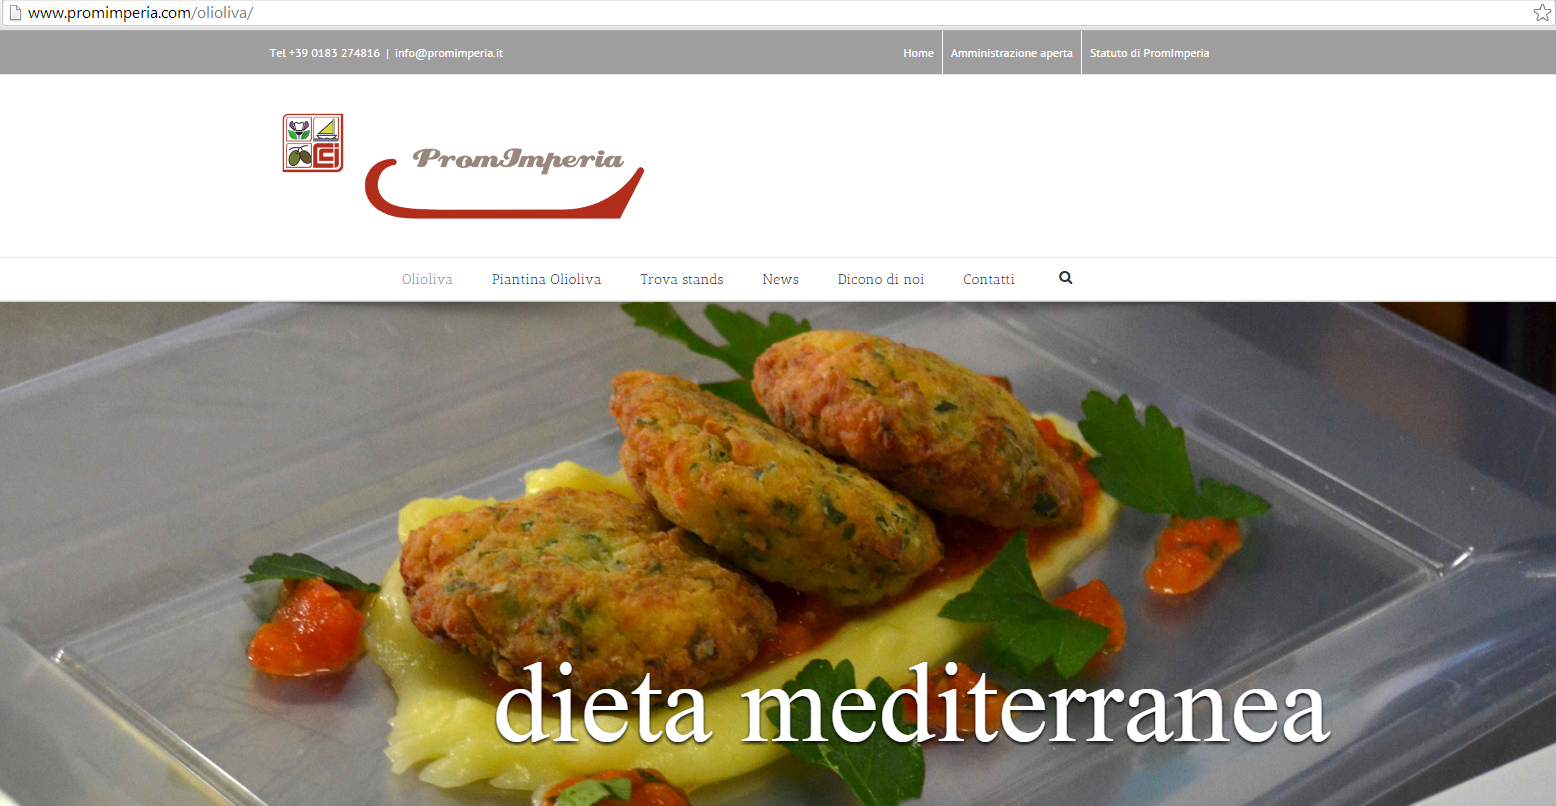 www.promimperia.com/olioliva